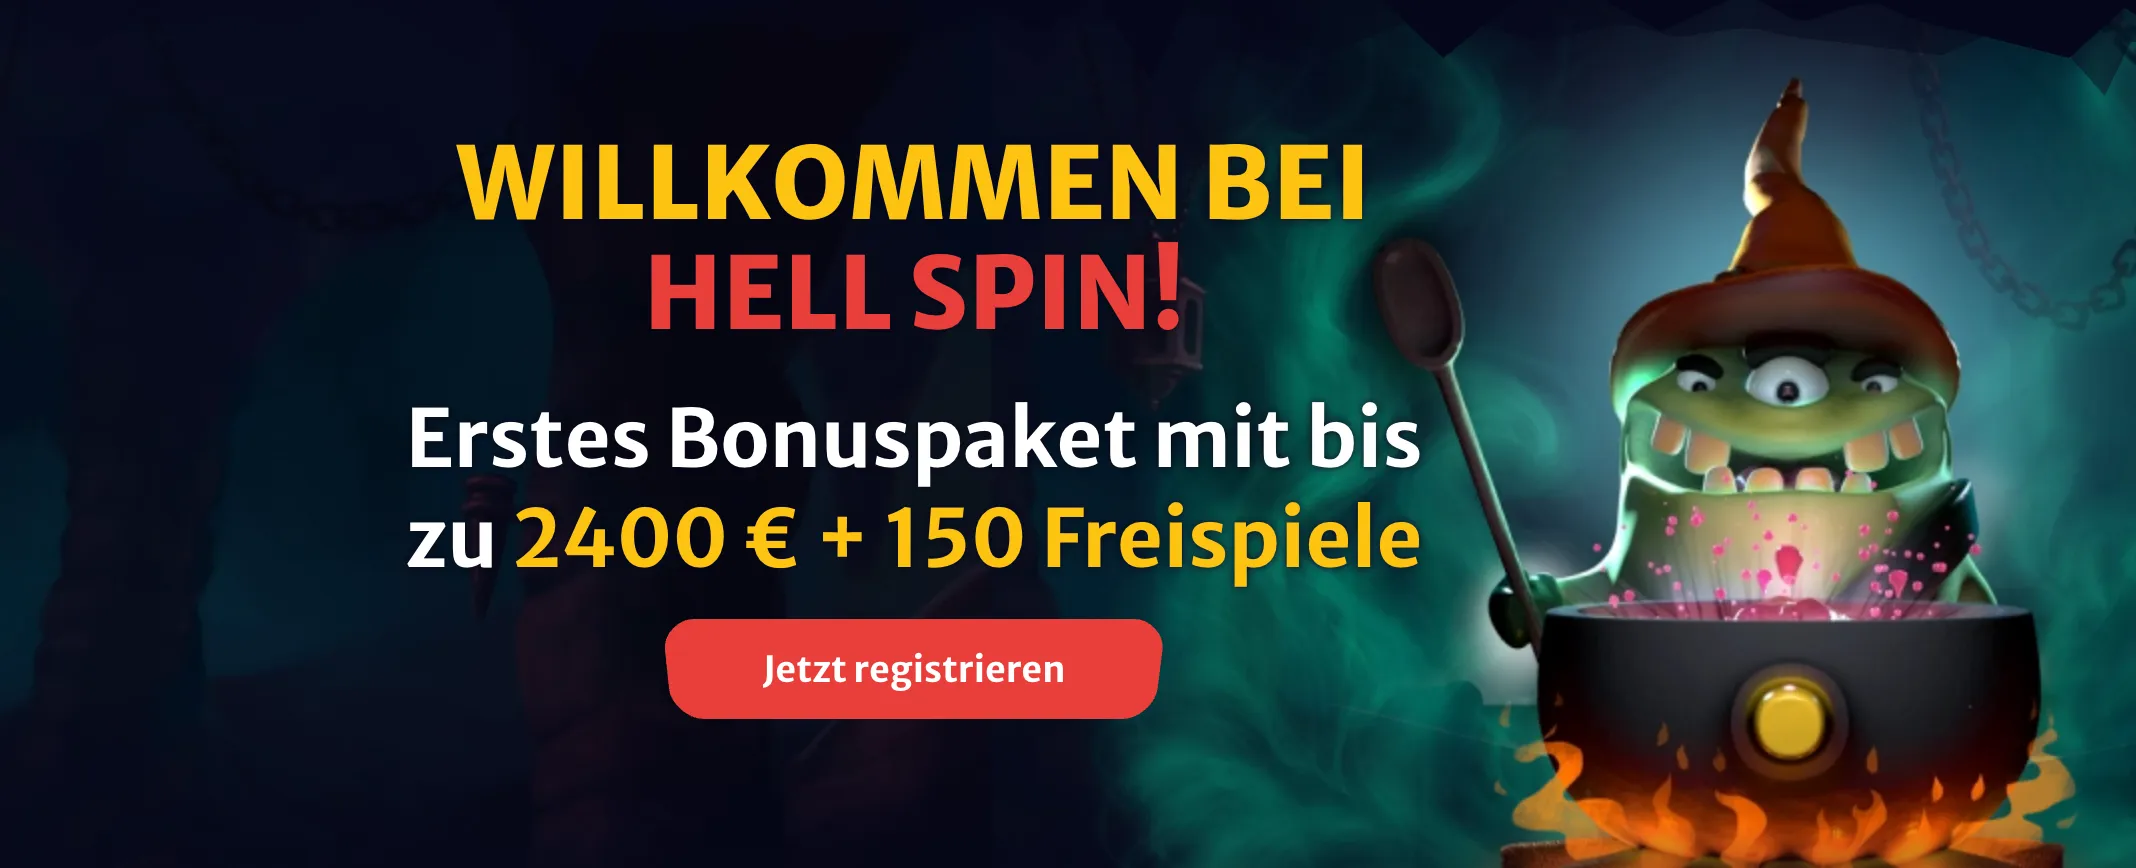 willkommen bonus hell spin casino